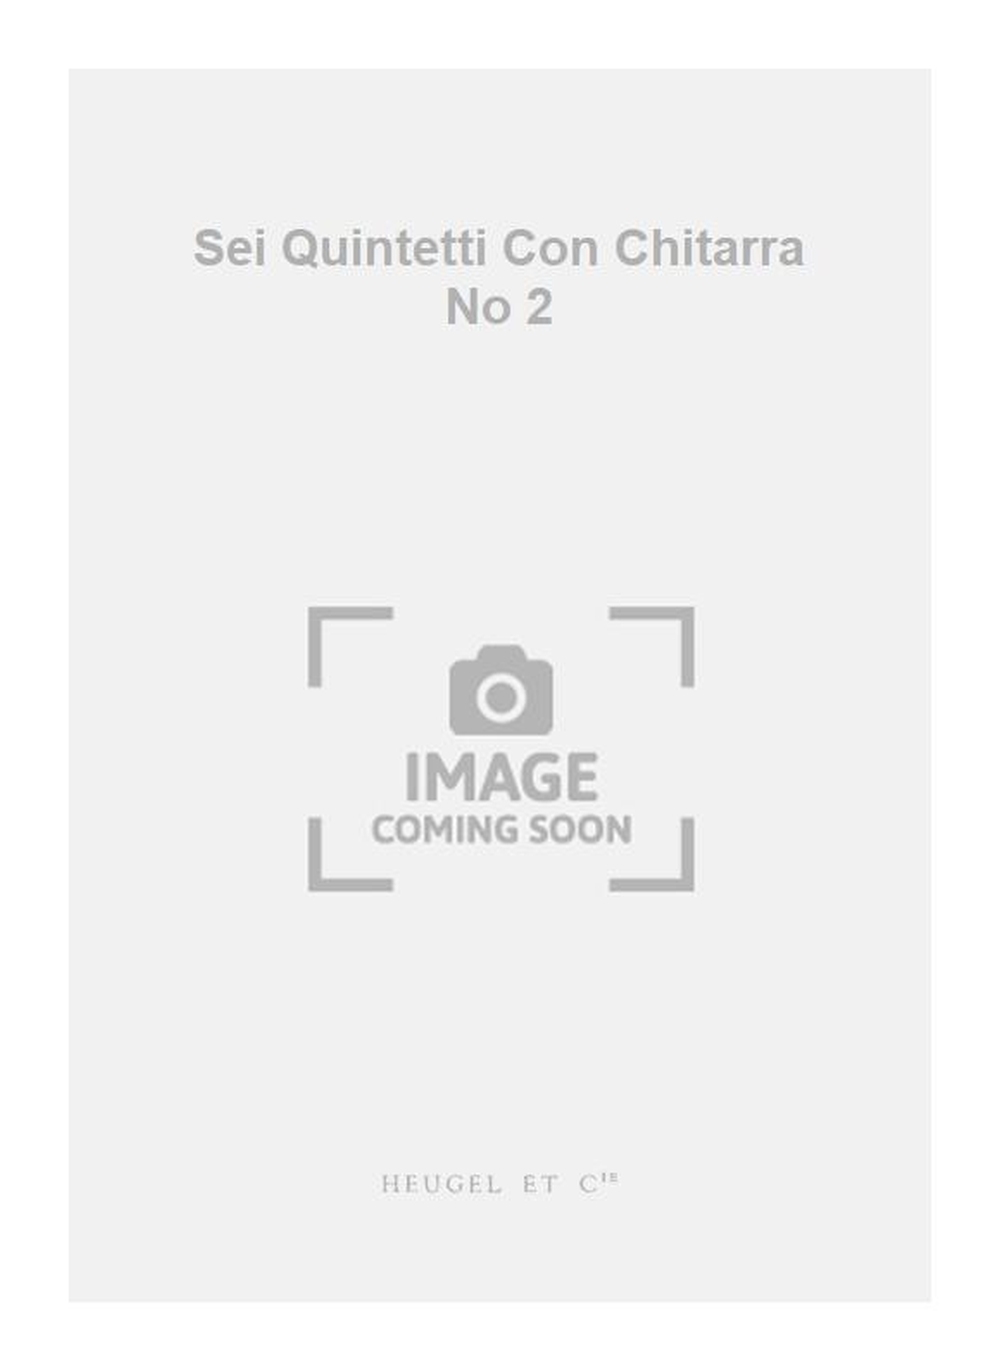 Luigi Boccherini: Sei Quintetti Con Chitarra No 2